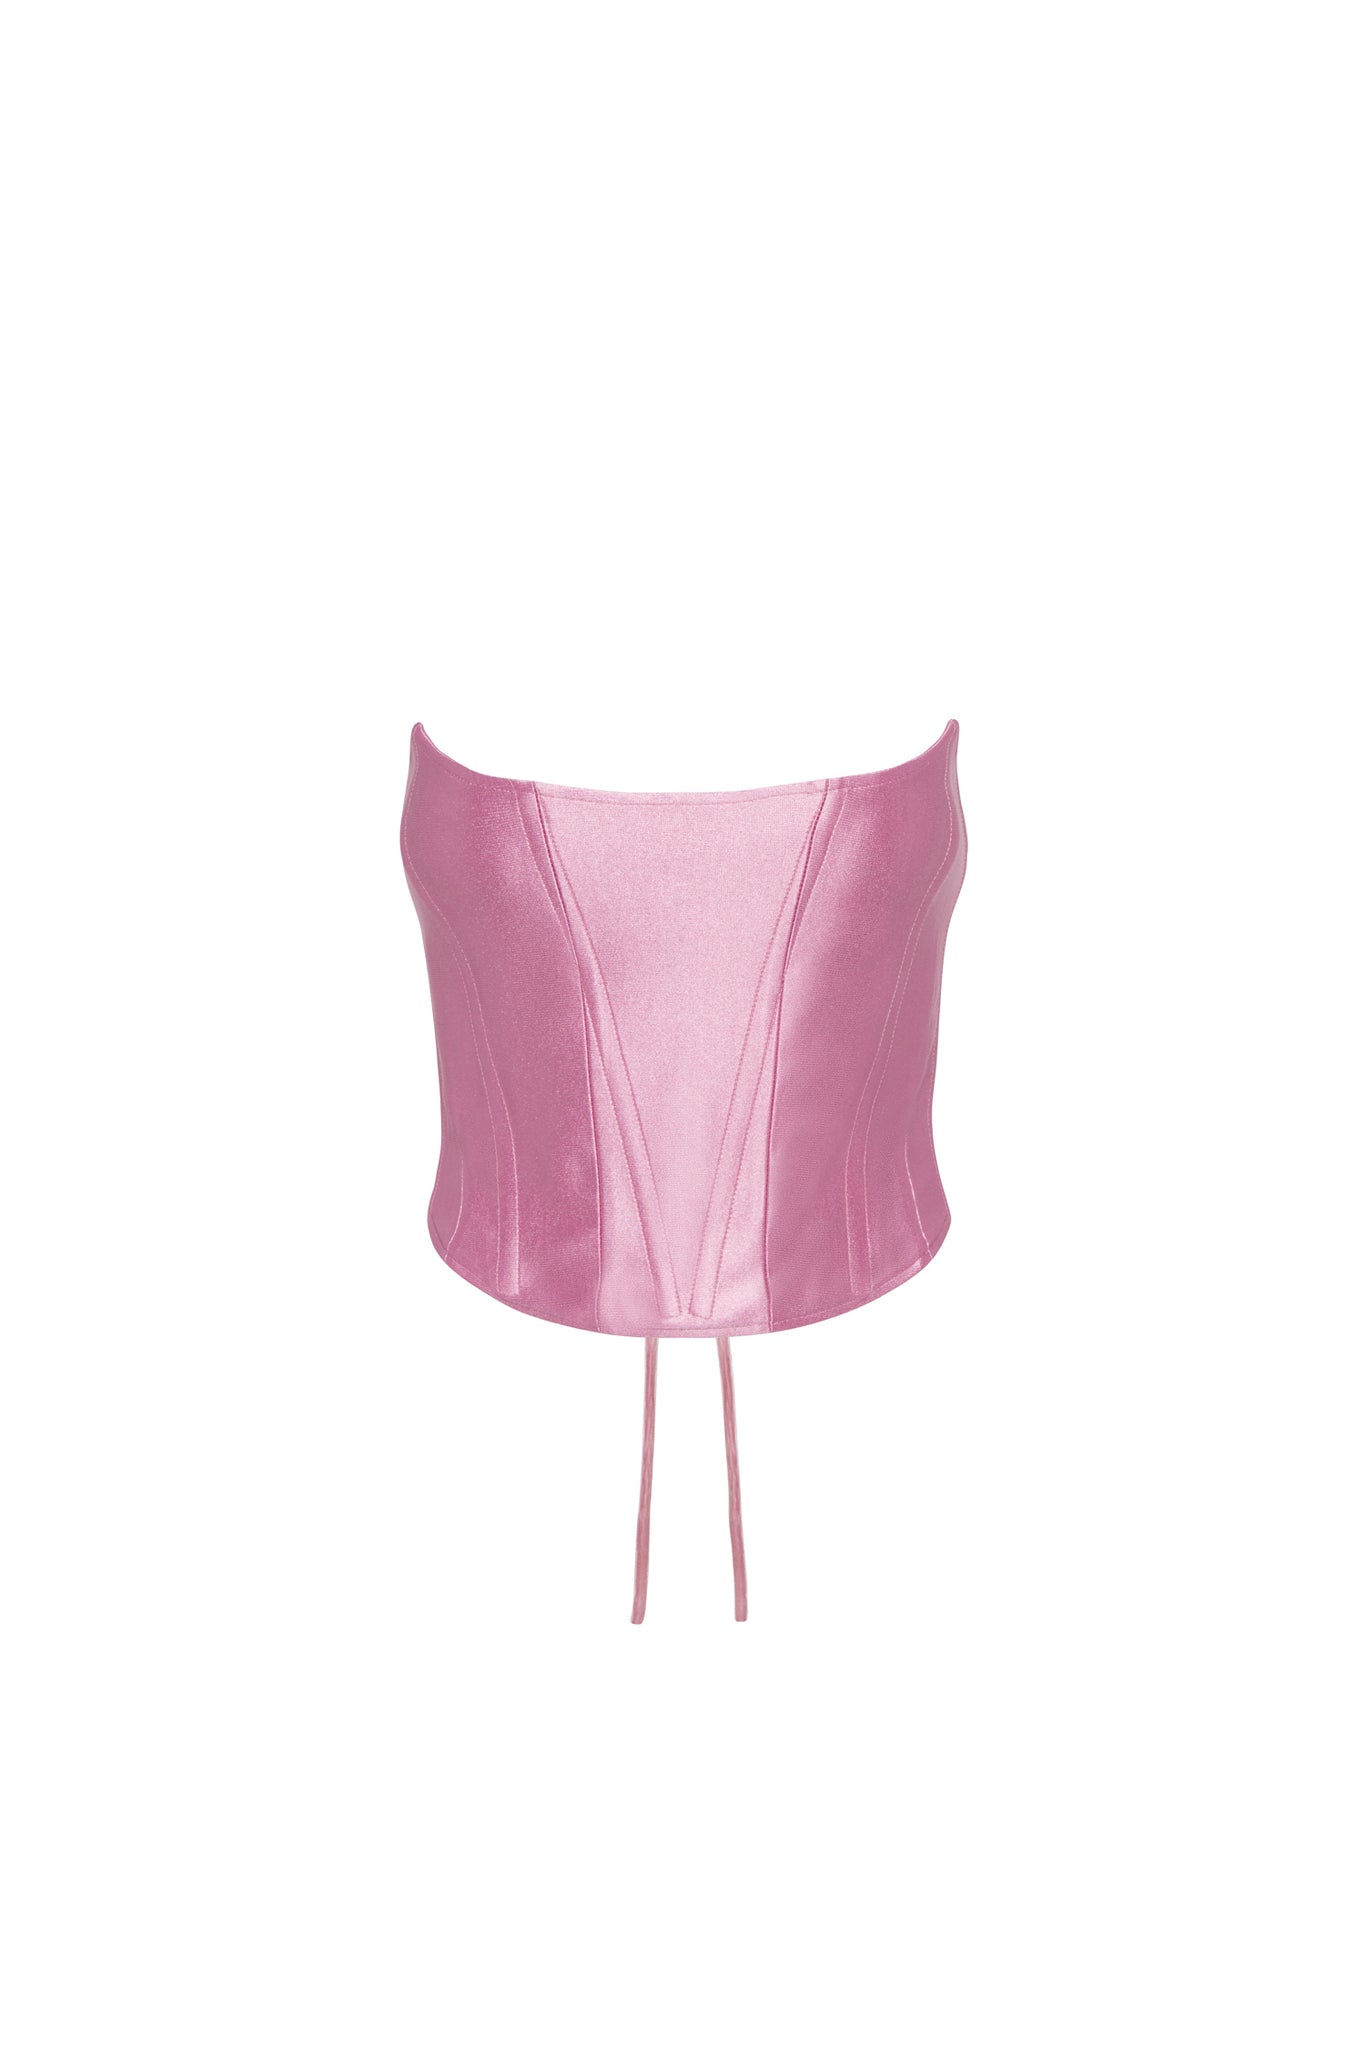 Athleisure Bustier Top - Blush Pink – STARSEEDS